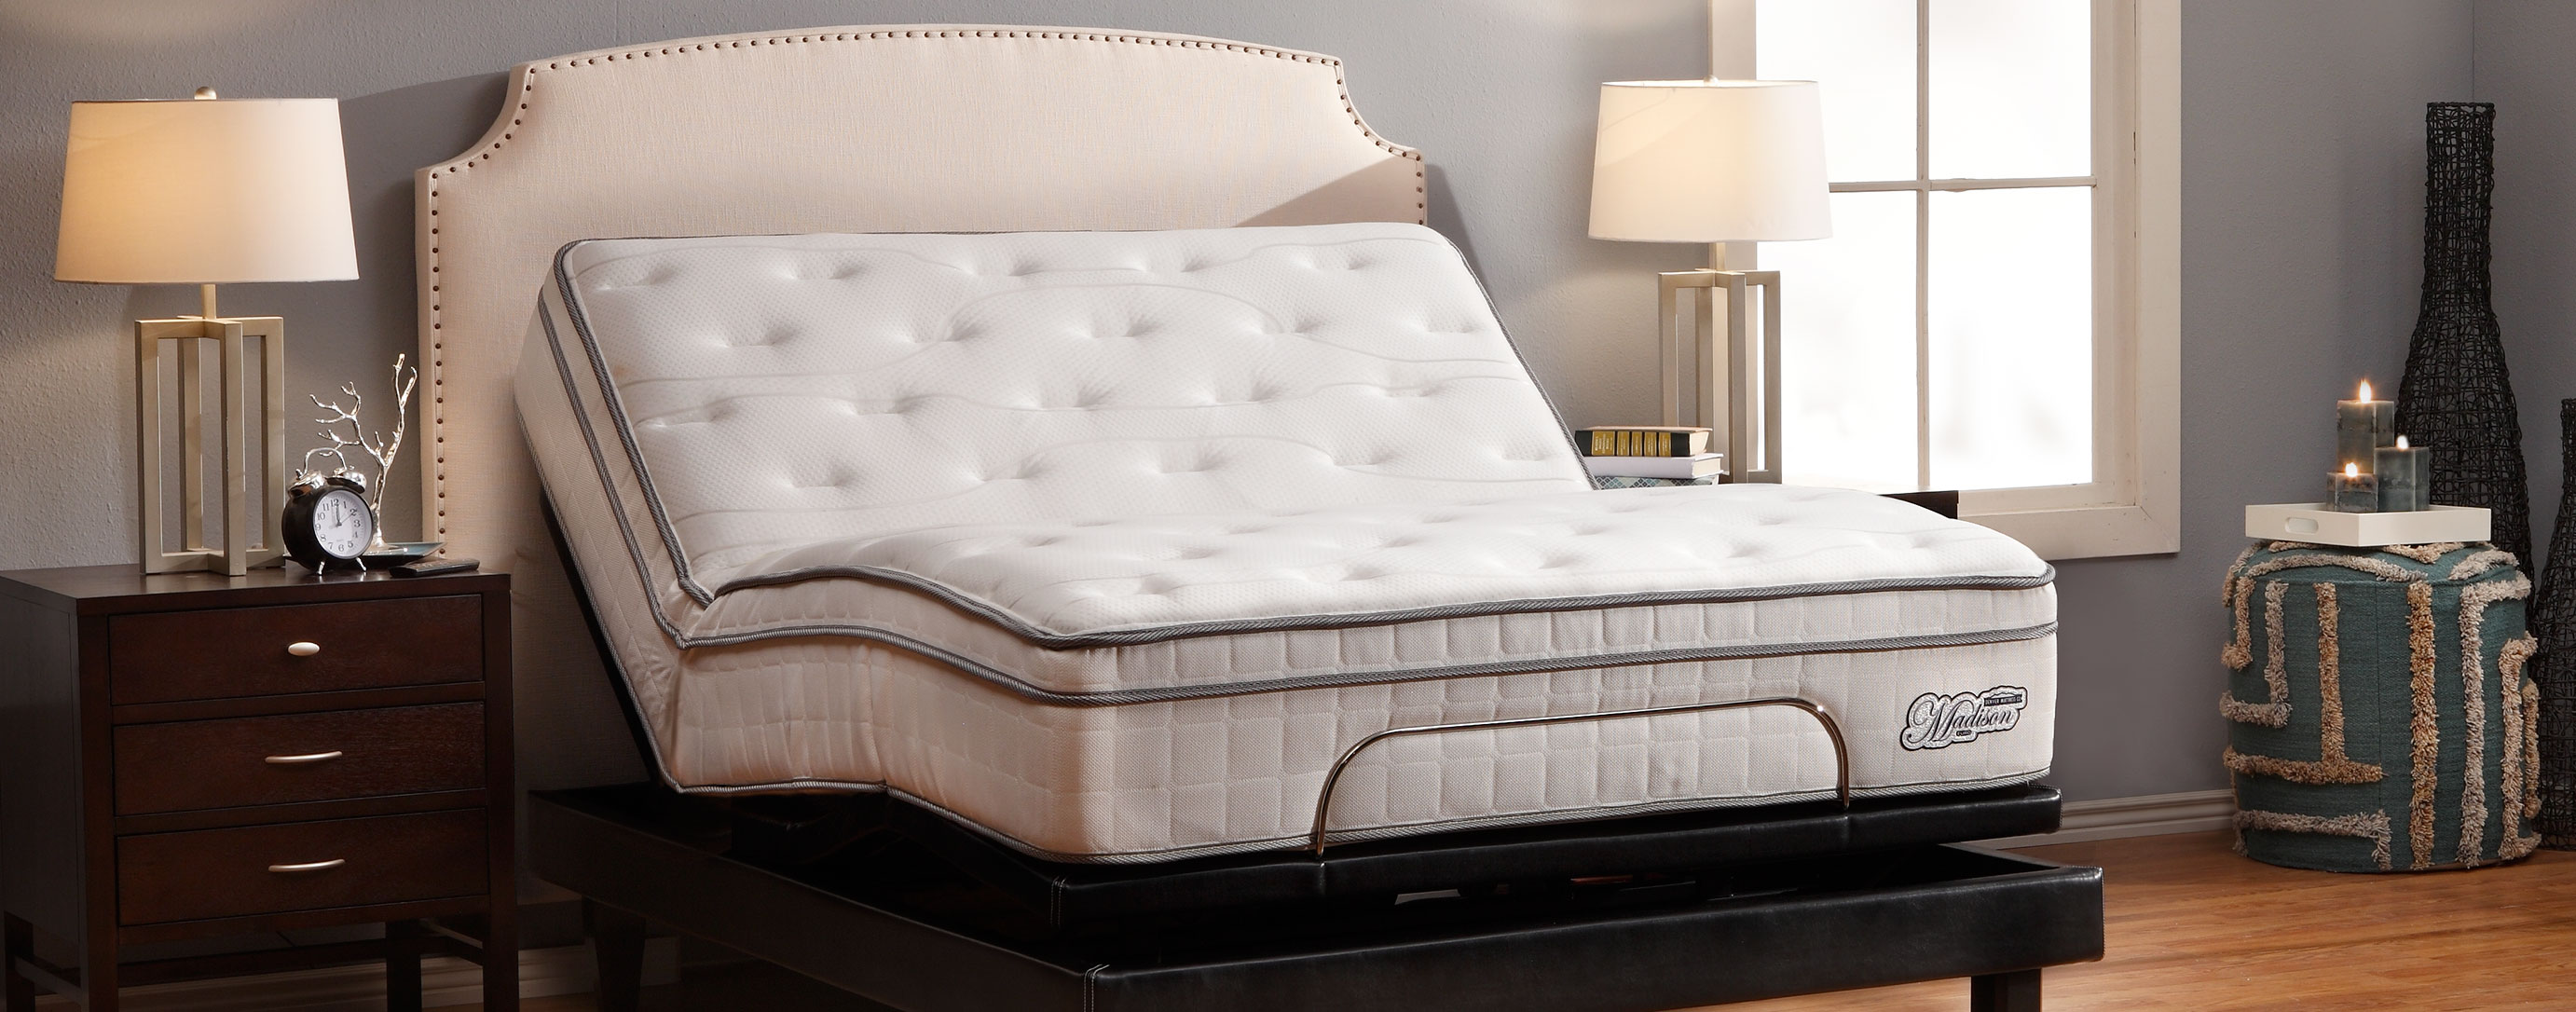 denver mattress pillow reviews